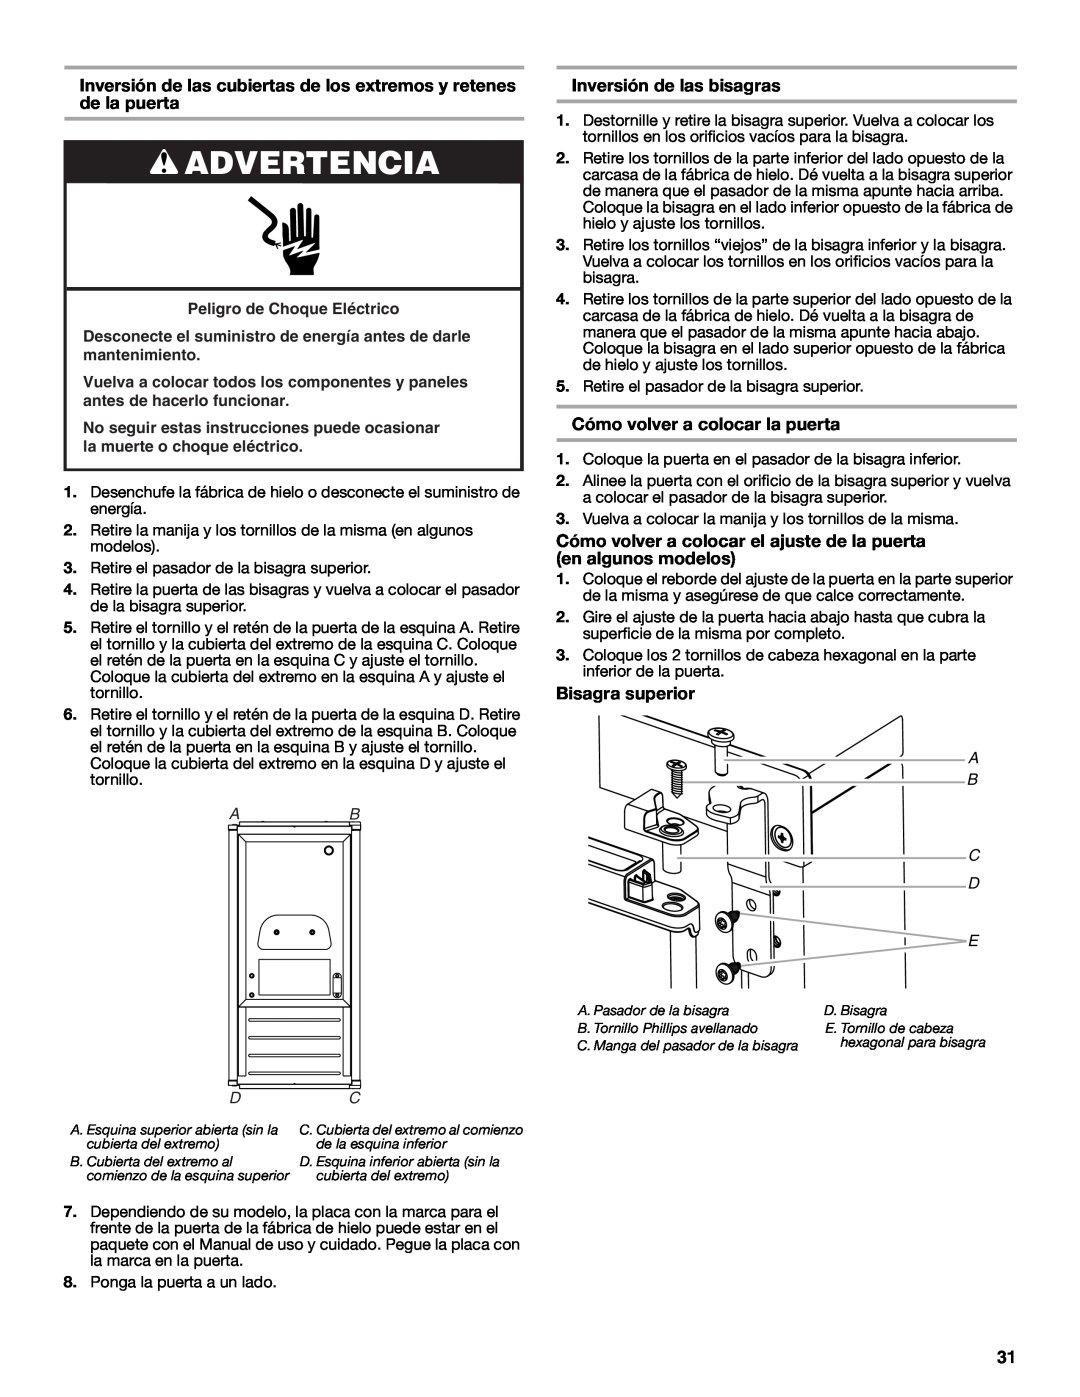 Jenn-Air W10519943B manual Inversión de las bisagras, Cómo volver a colocar la puerta, Bisagra superior, Advertencia 